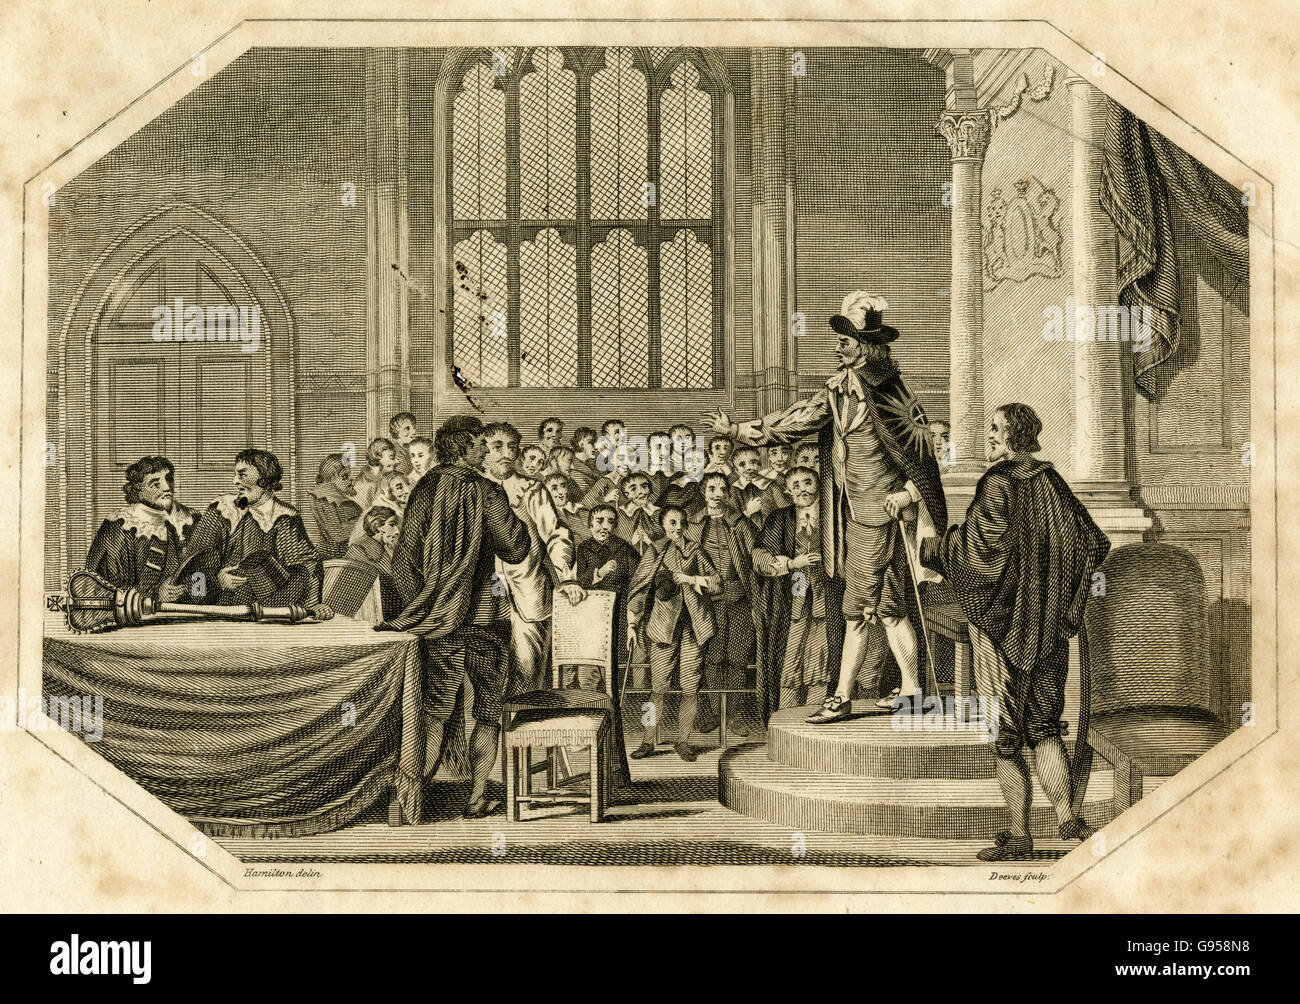 Antiguo grabado de 1803, Charles I aborda el Parlamento y "exigente a las personas de los cinco miembros que él había acusado de traición a la patria" el 3 de enero de 1642. Fuente: grabado original. Foto de stock